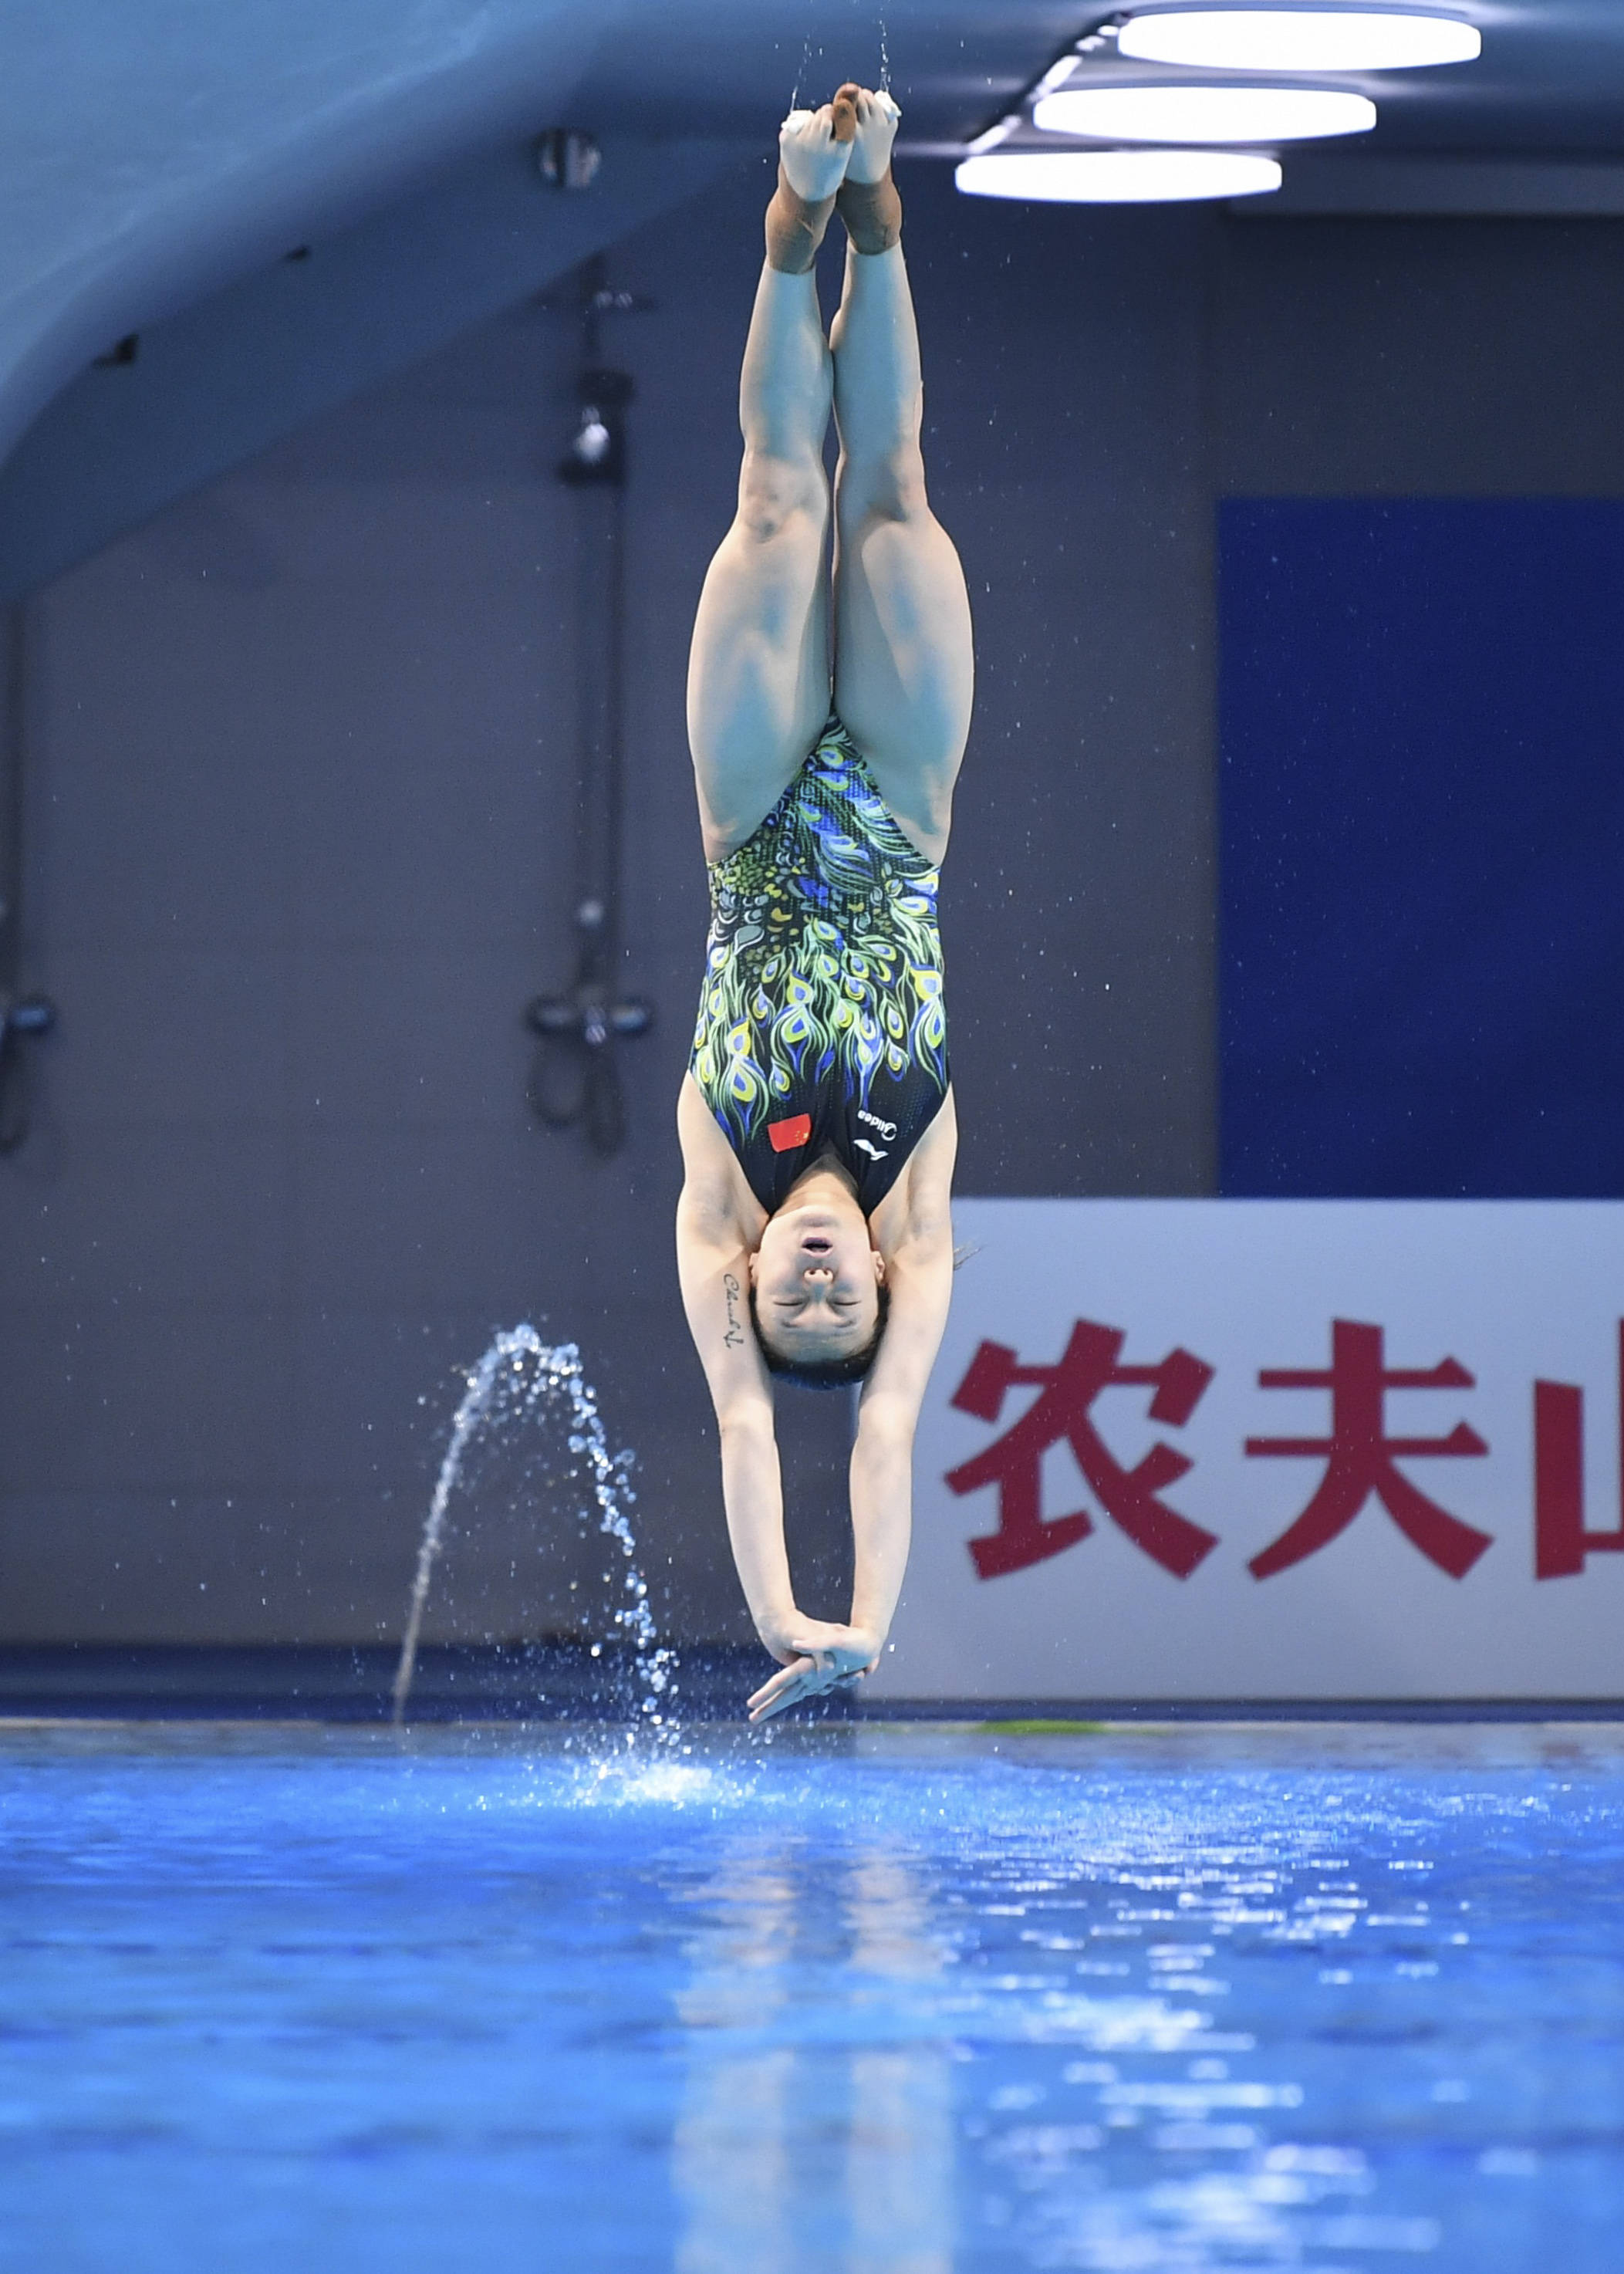 跳水2021年中国跳水明星赛女子三米跳板决赛赛况